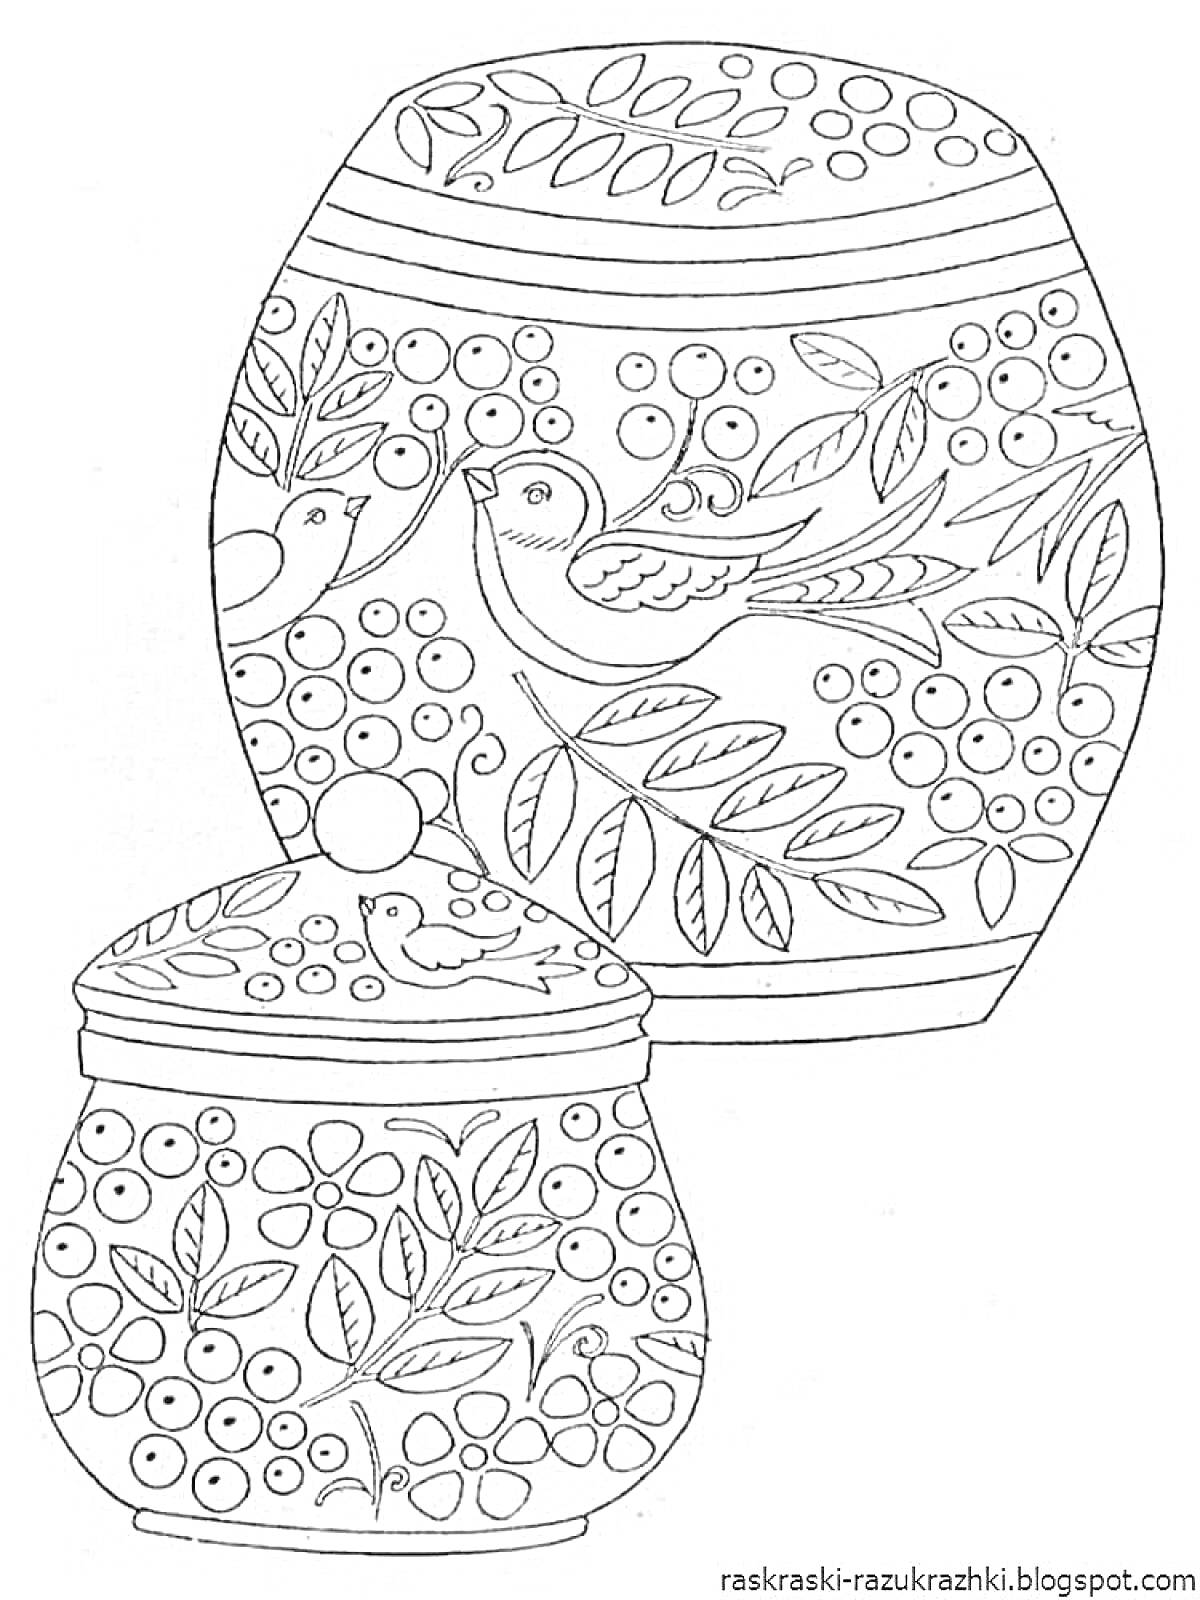 Раскраска Хохломская роспись с птицей, ягодами и листочками на баночках